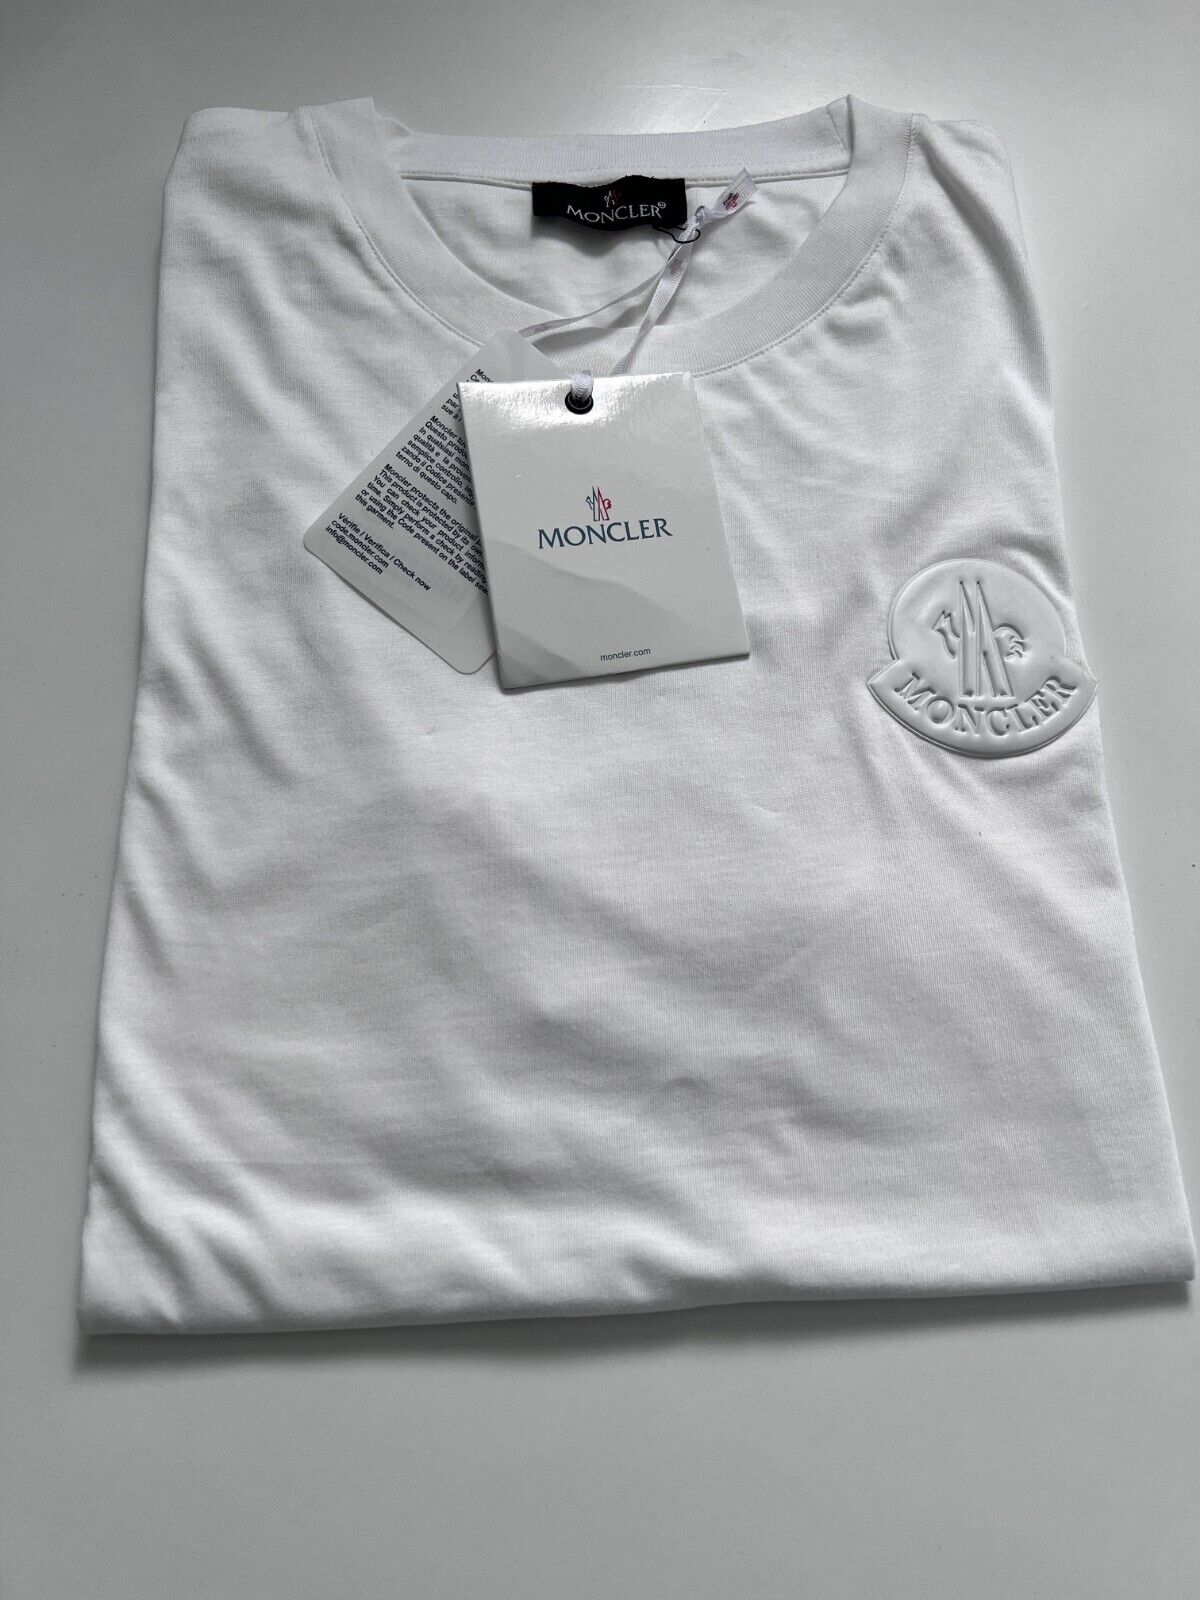 HOT SALE MoncleLogo Printed T-Shirt White Size XL